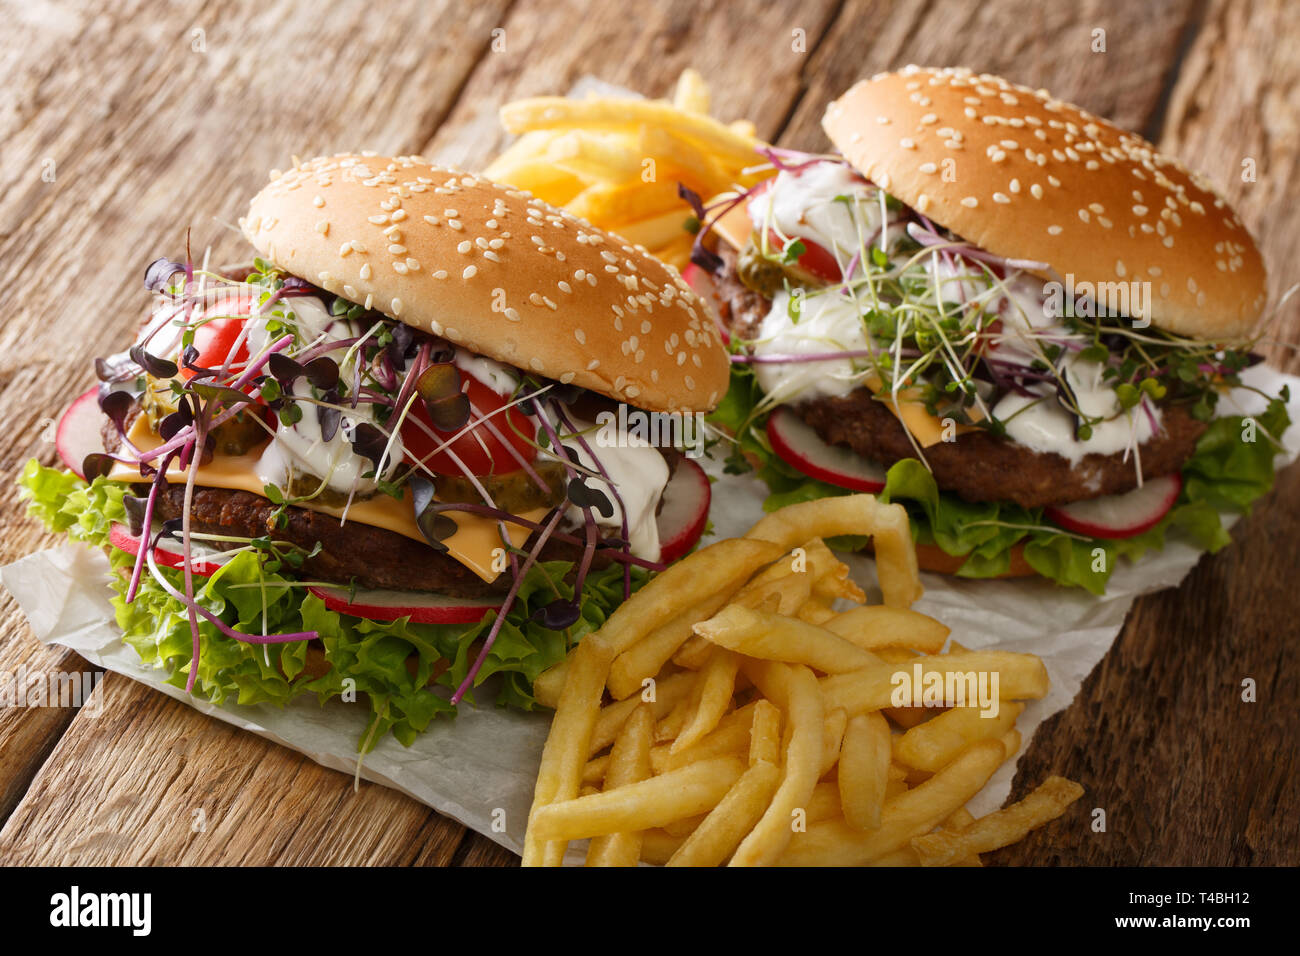 Les burgers de printemps avec des légumes frais, microgreen, fromage cheddar et sauce blanche, avec des frites sur la table horizontale. Banque D'Images